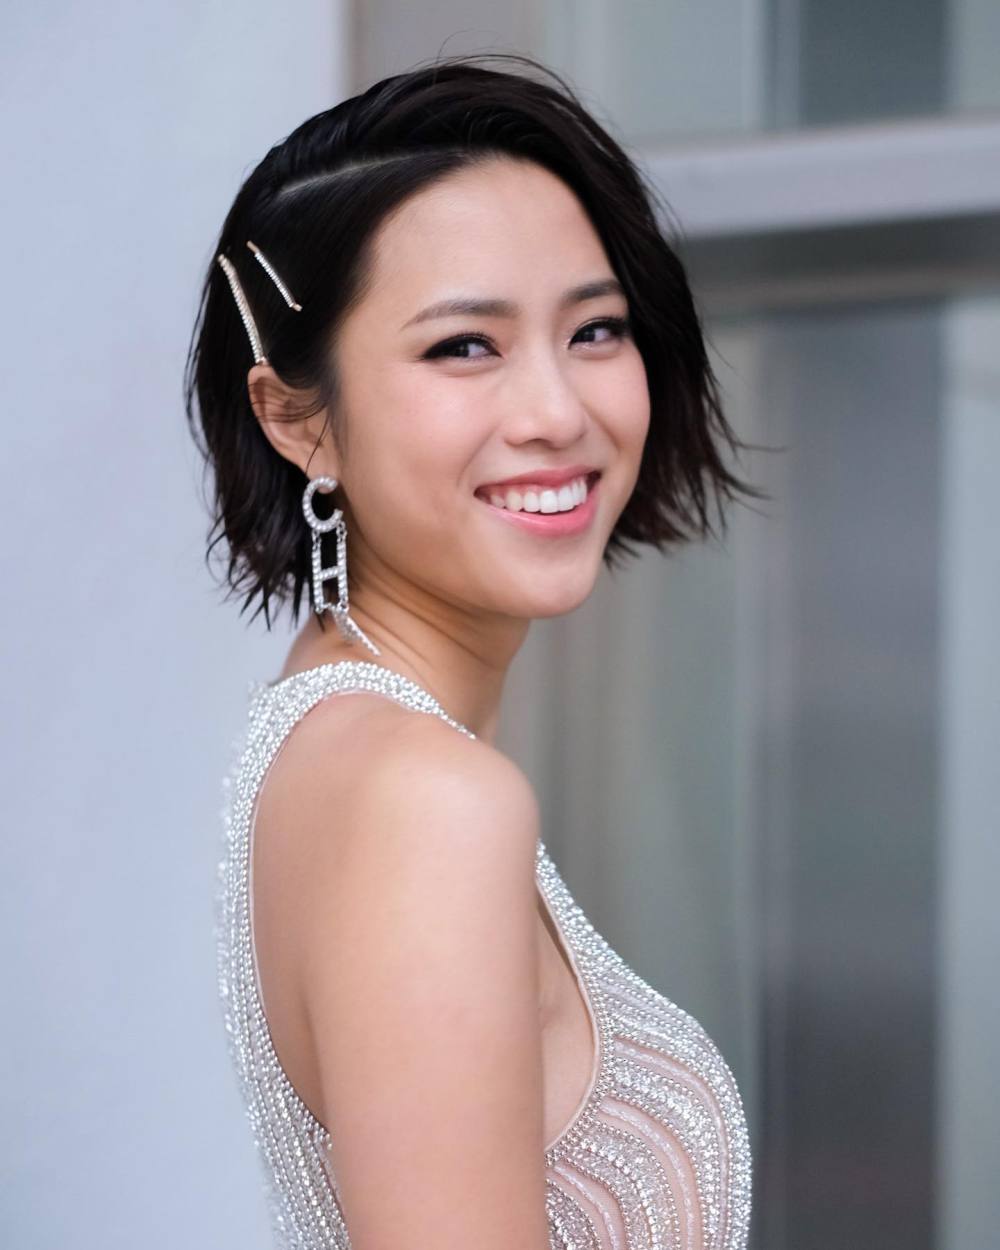 刘颖镟 Sexy and Hottest Photos , Latest Pics